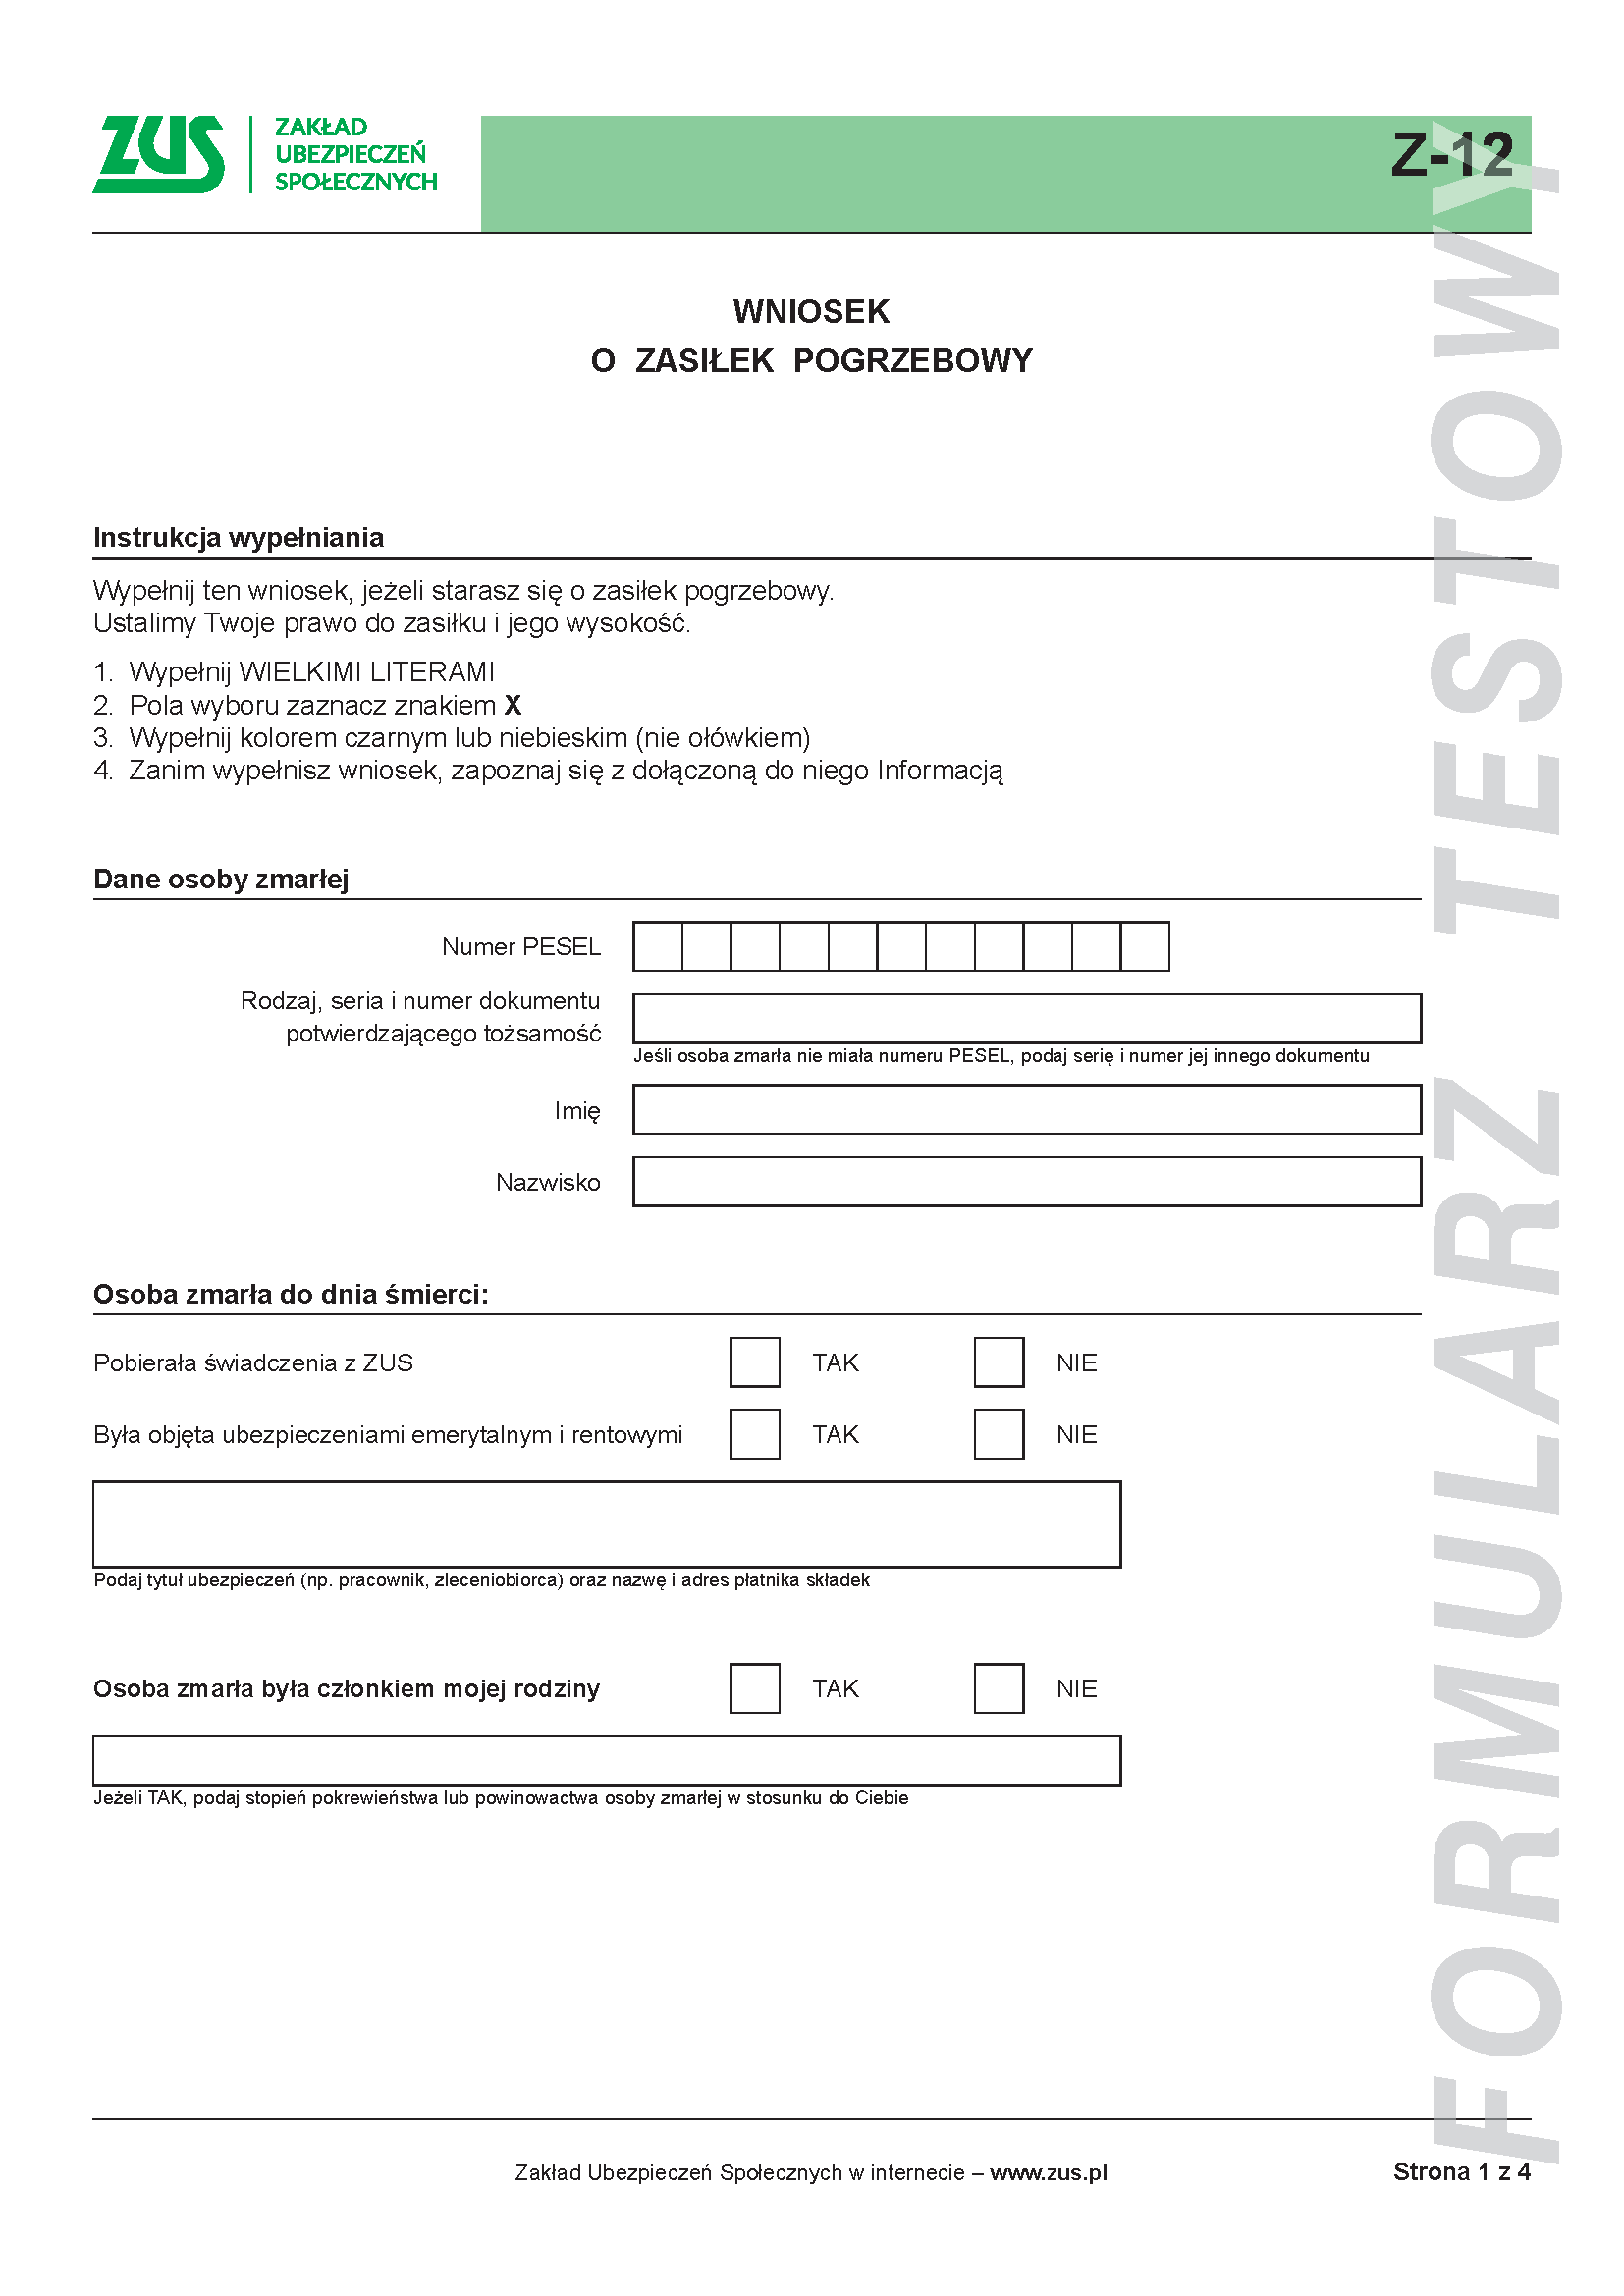 Wniosek o zasiłek pogrzebowy - uproszczony formularz testowy